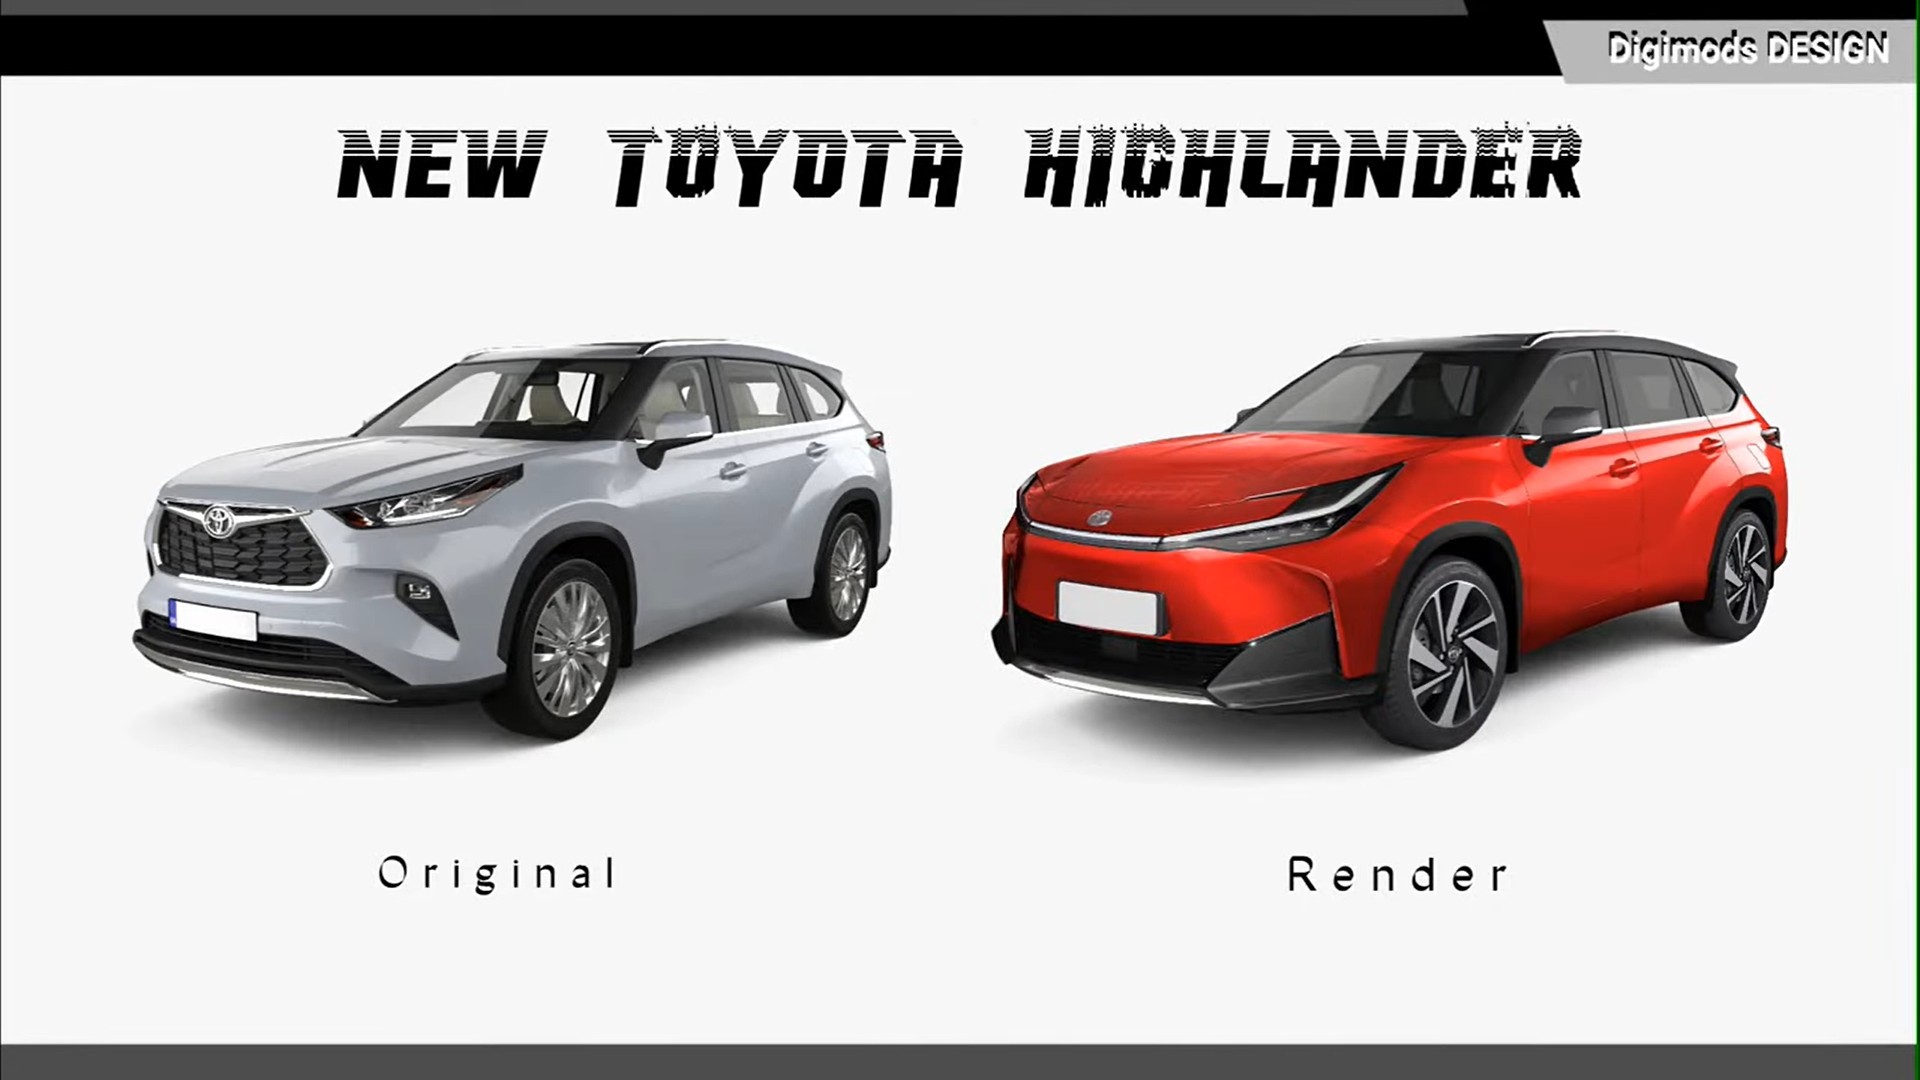 Ảnh phác họa thiết kế Toyota Highlander mới cực ngầu, quyết đấu Honda Pilot sculpted-all-new-toyota-highlander-gets-unofficially-ready-to-fight-honda-s-pilot-1.jpg